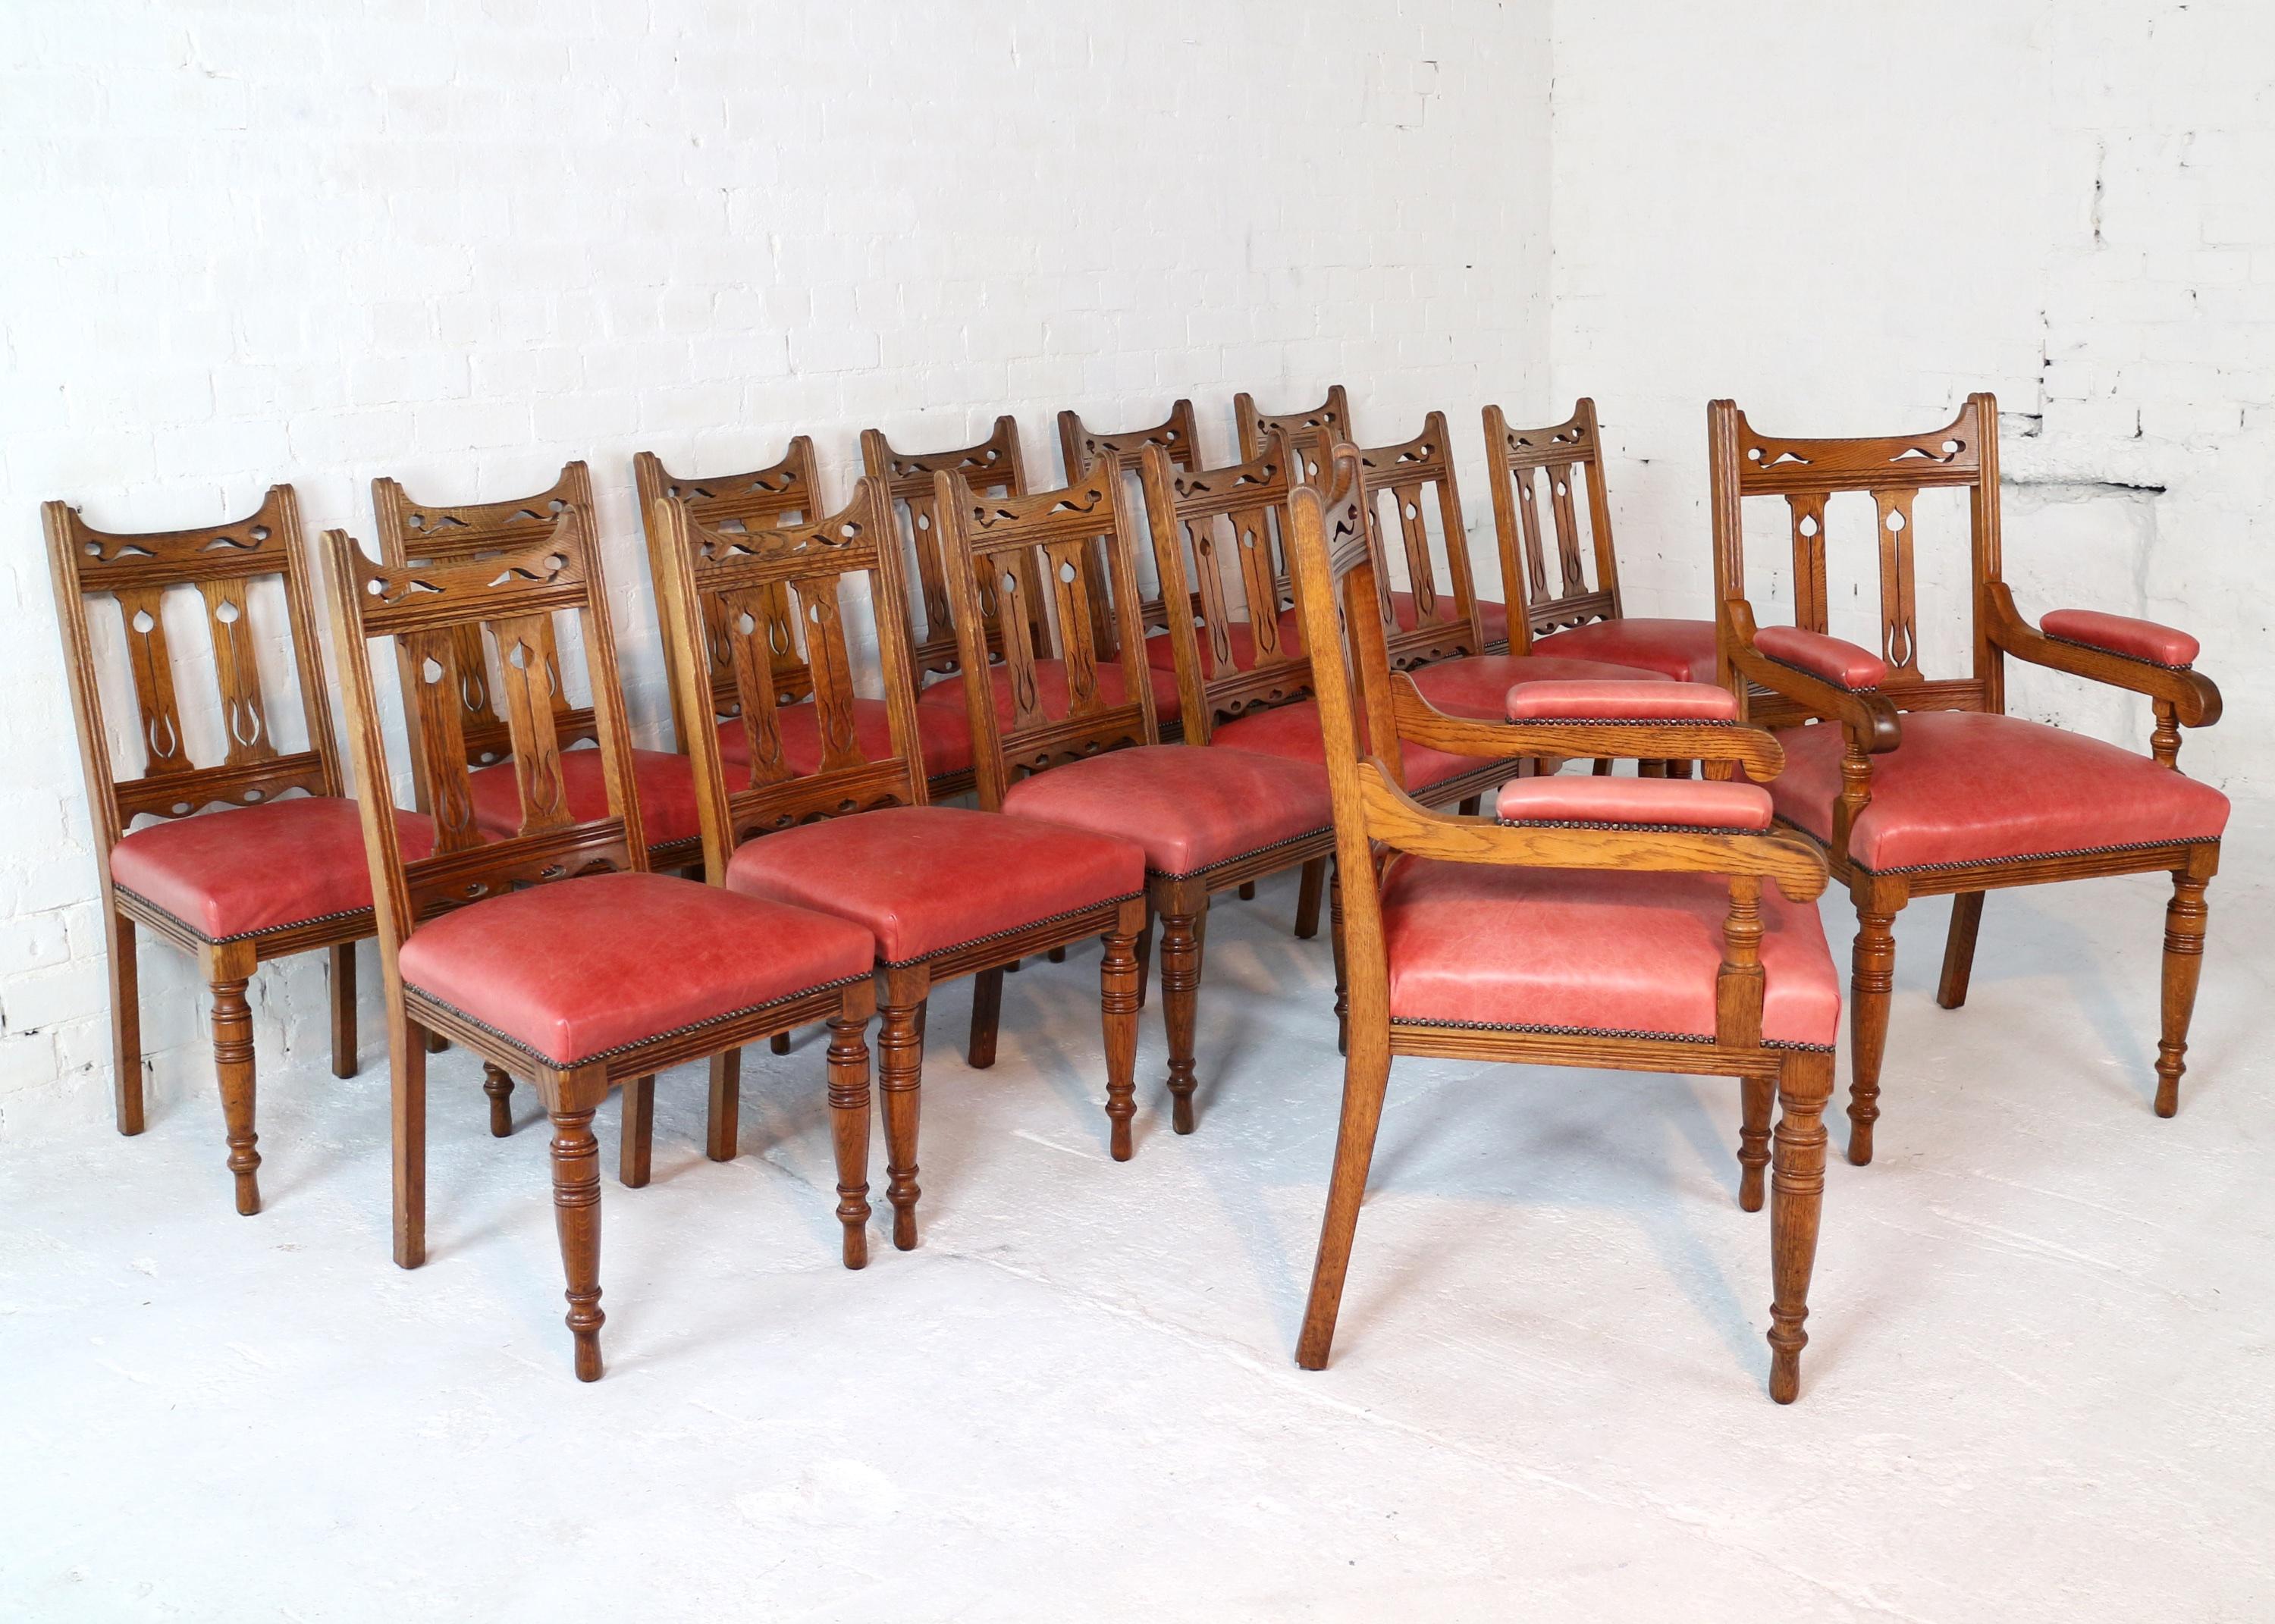 Un ensemble très original de 14 chaises de salle à manger en chêne doré Arts & Crafts du 19e siècle, probablement de Liberty's ou de Wylie & Lochhead. Comprenant 12 chaises d'appoint et deux fauteuils carver, ils présentent une traverse supérieure